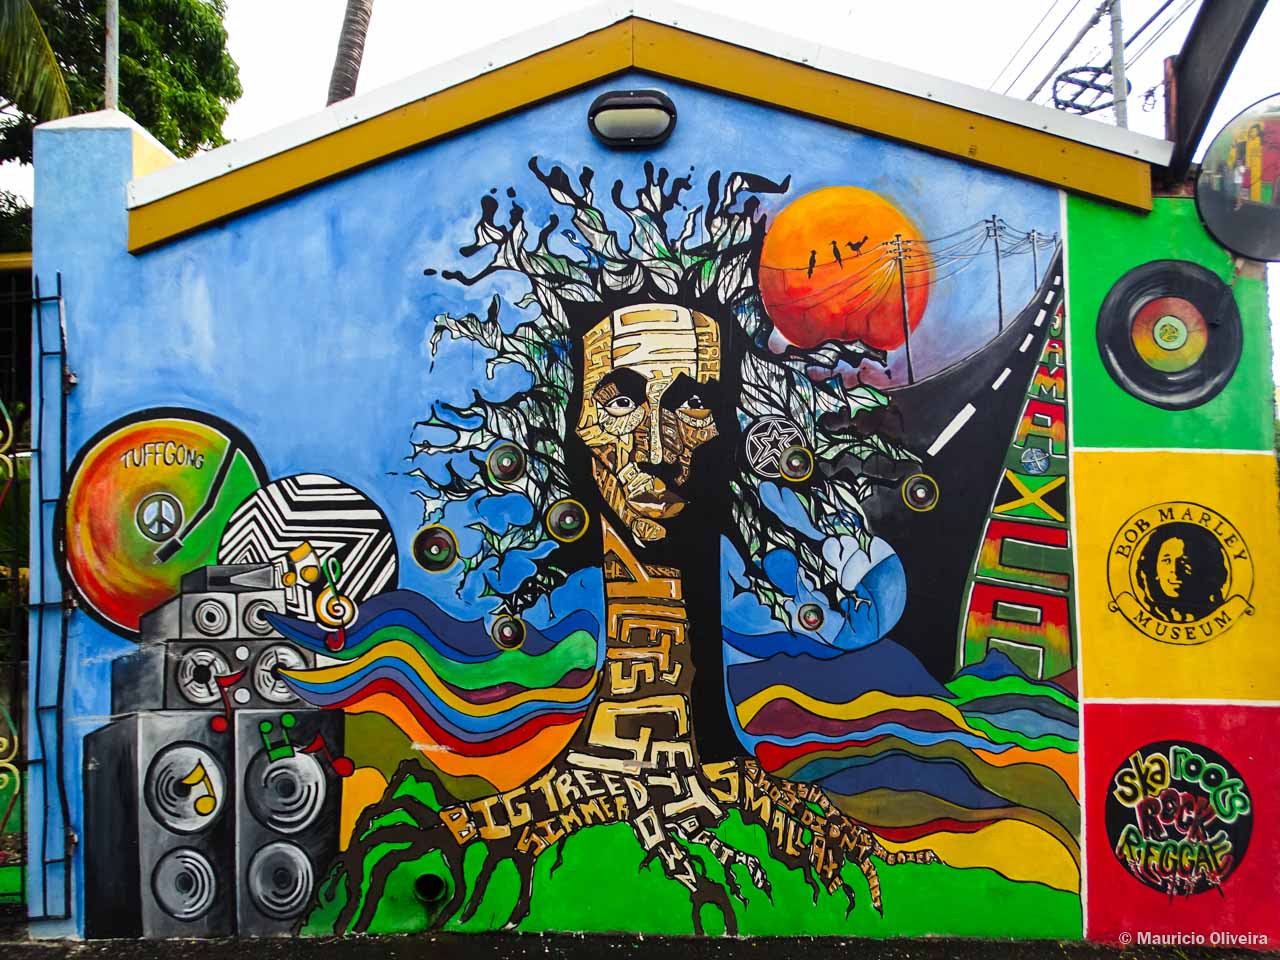 Museu de Bob Marley, a casa do Reggae na Jamaica - Viagens Possíveis1280 x 960